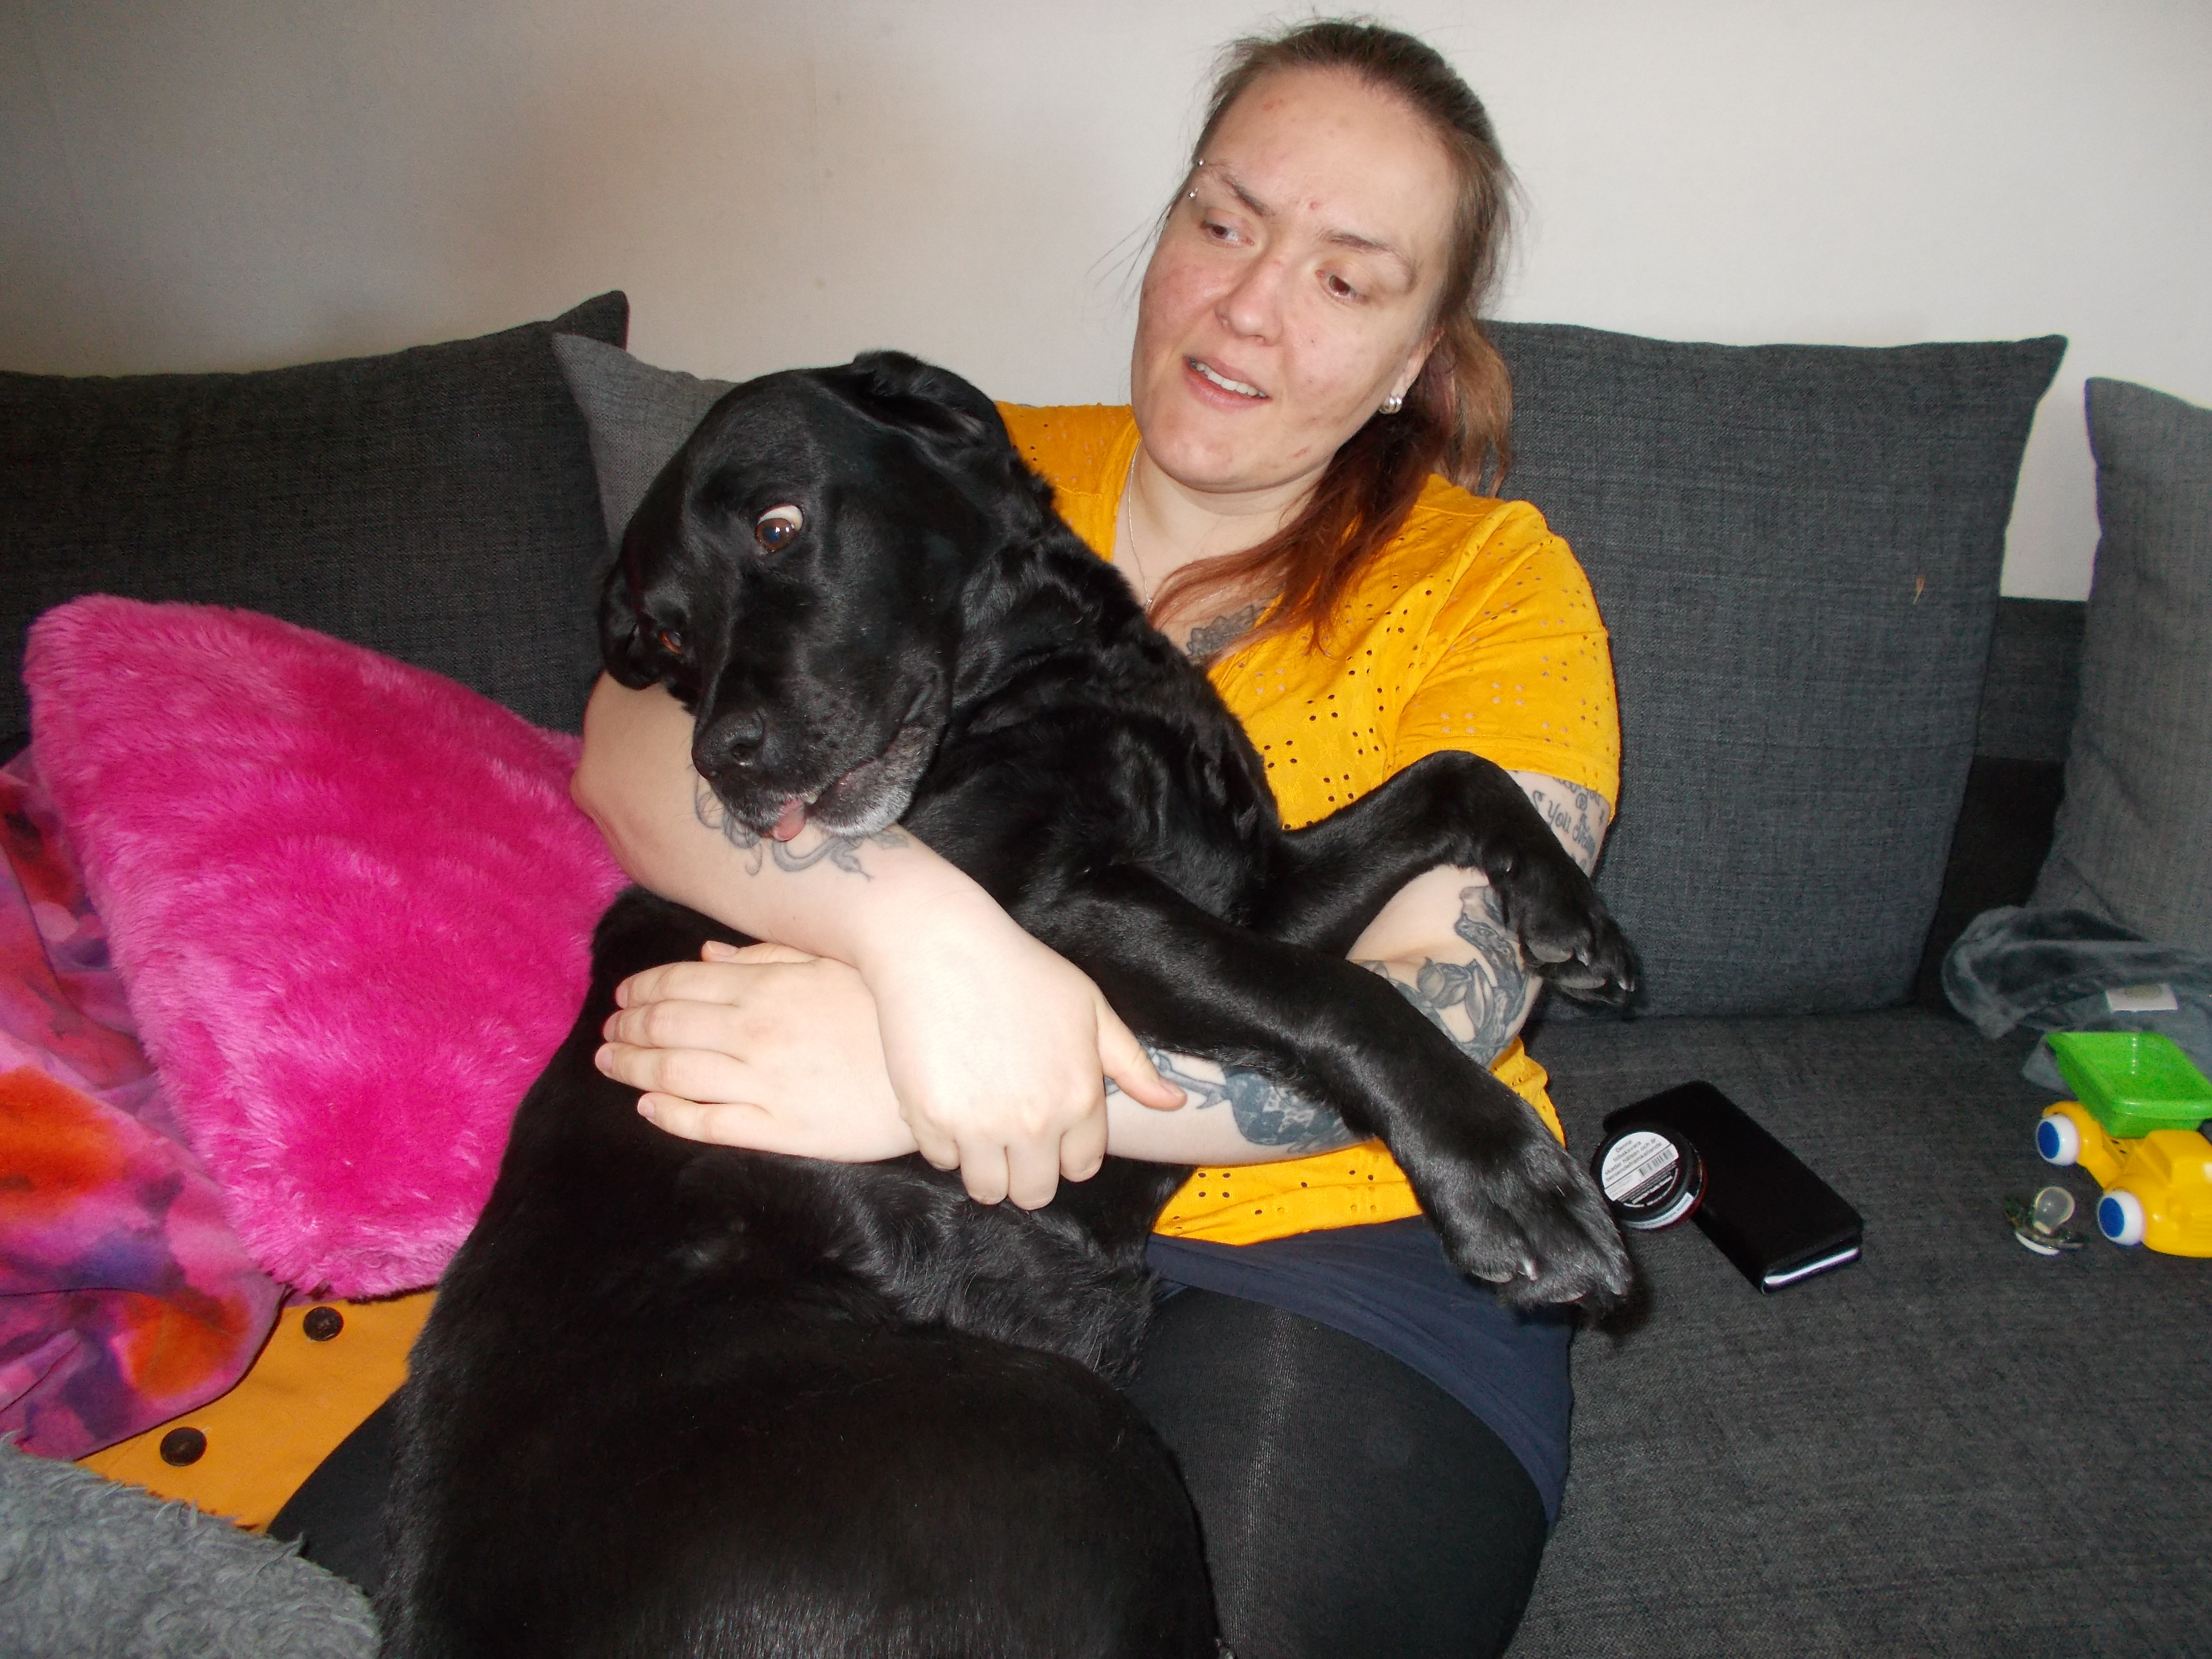 Ida sitter i soffan med labradoren Stella i sin famn. En barnleksak ligger bredvid i soffan.